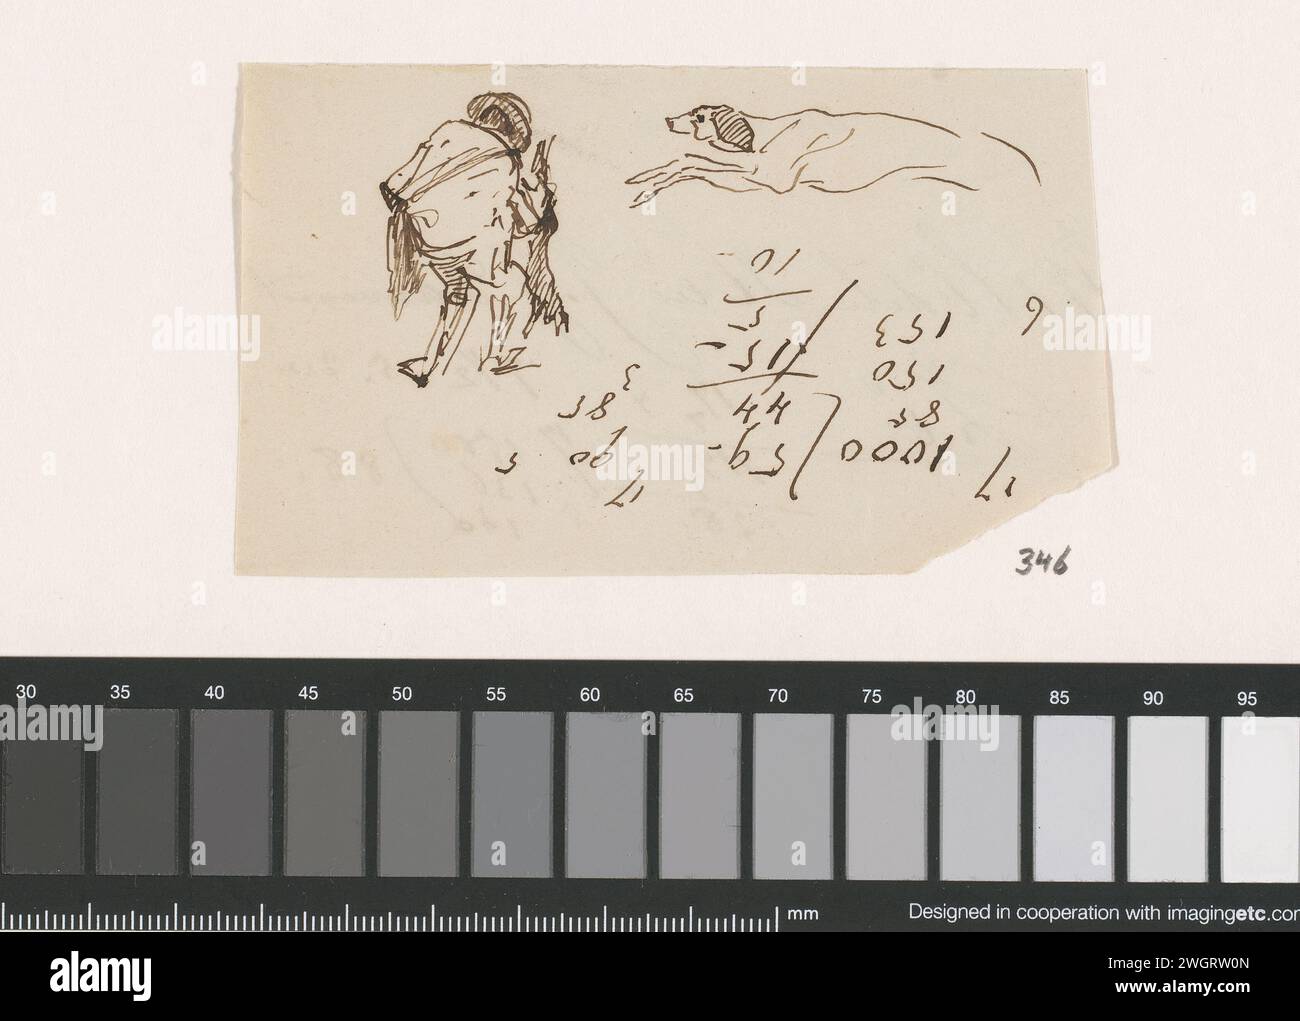 Mann und Jagdhund Johannes Taventrate, 1840 - 1880 Doodles eines Mannes und Jagdhunds zeichnen, mit Berechnungen. Papier. Tintenstift Jagdhunde Stockfoto